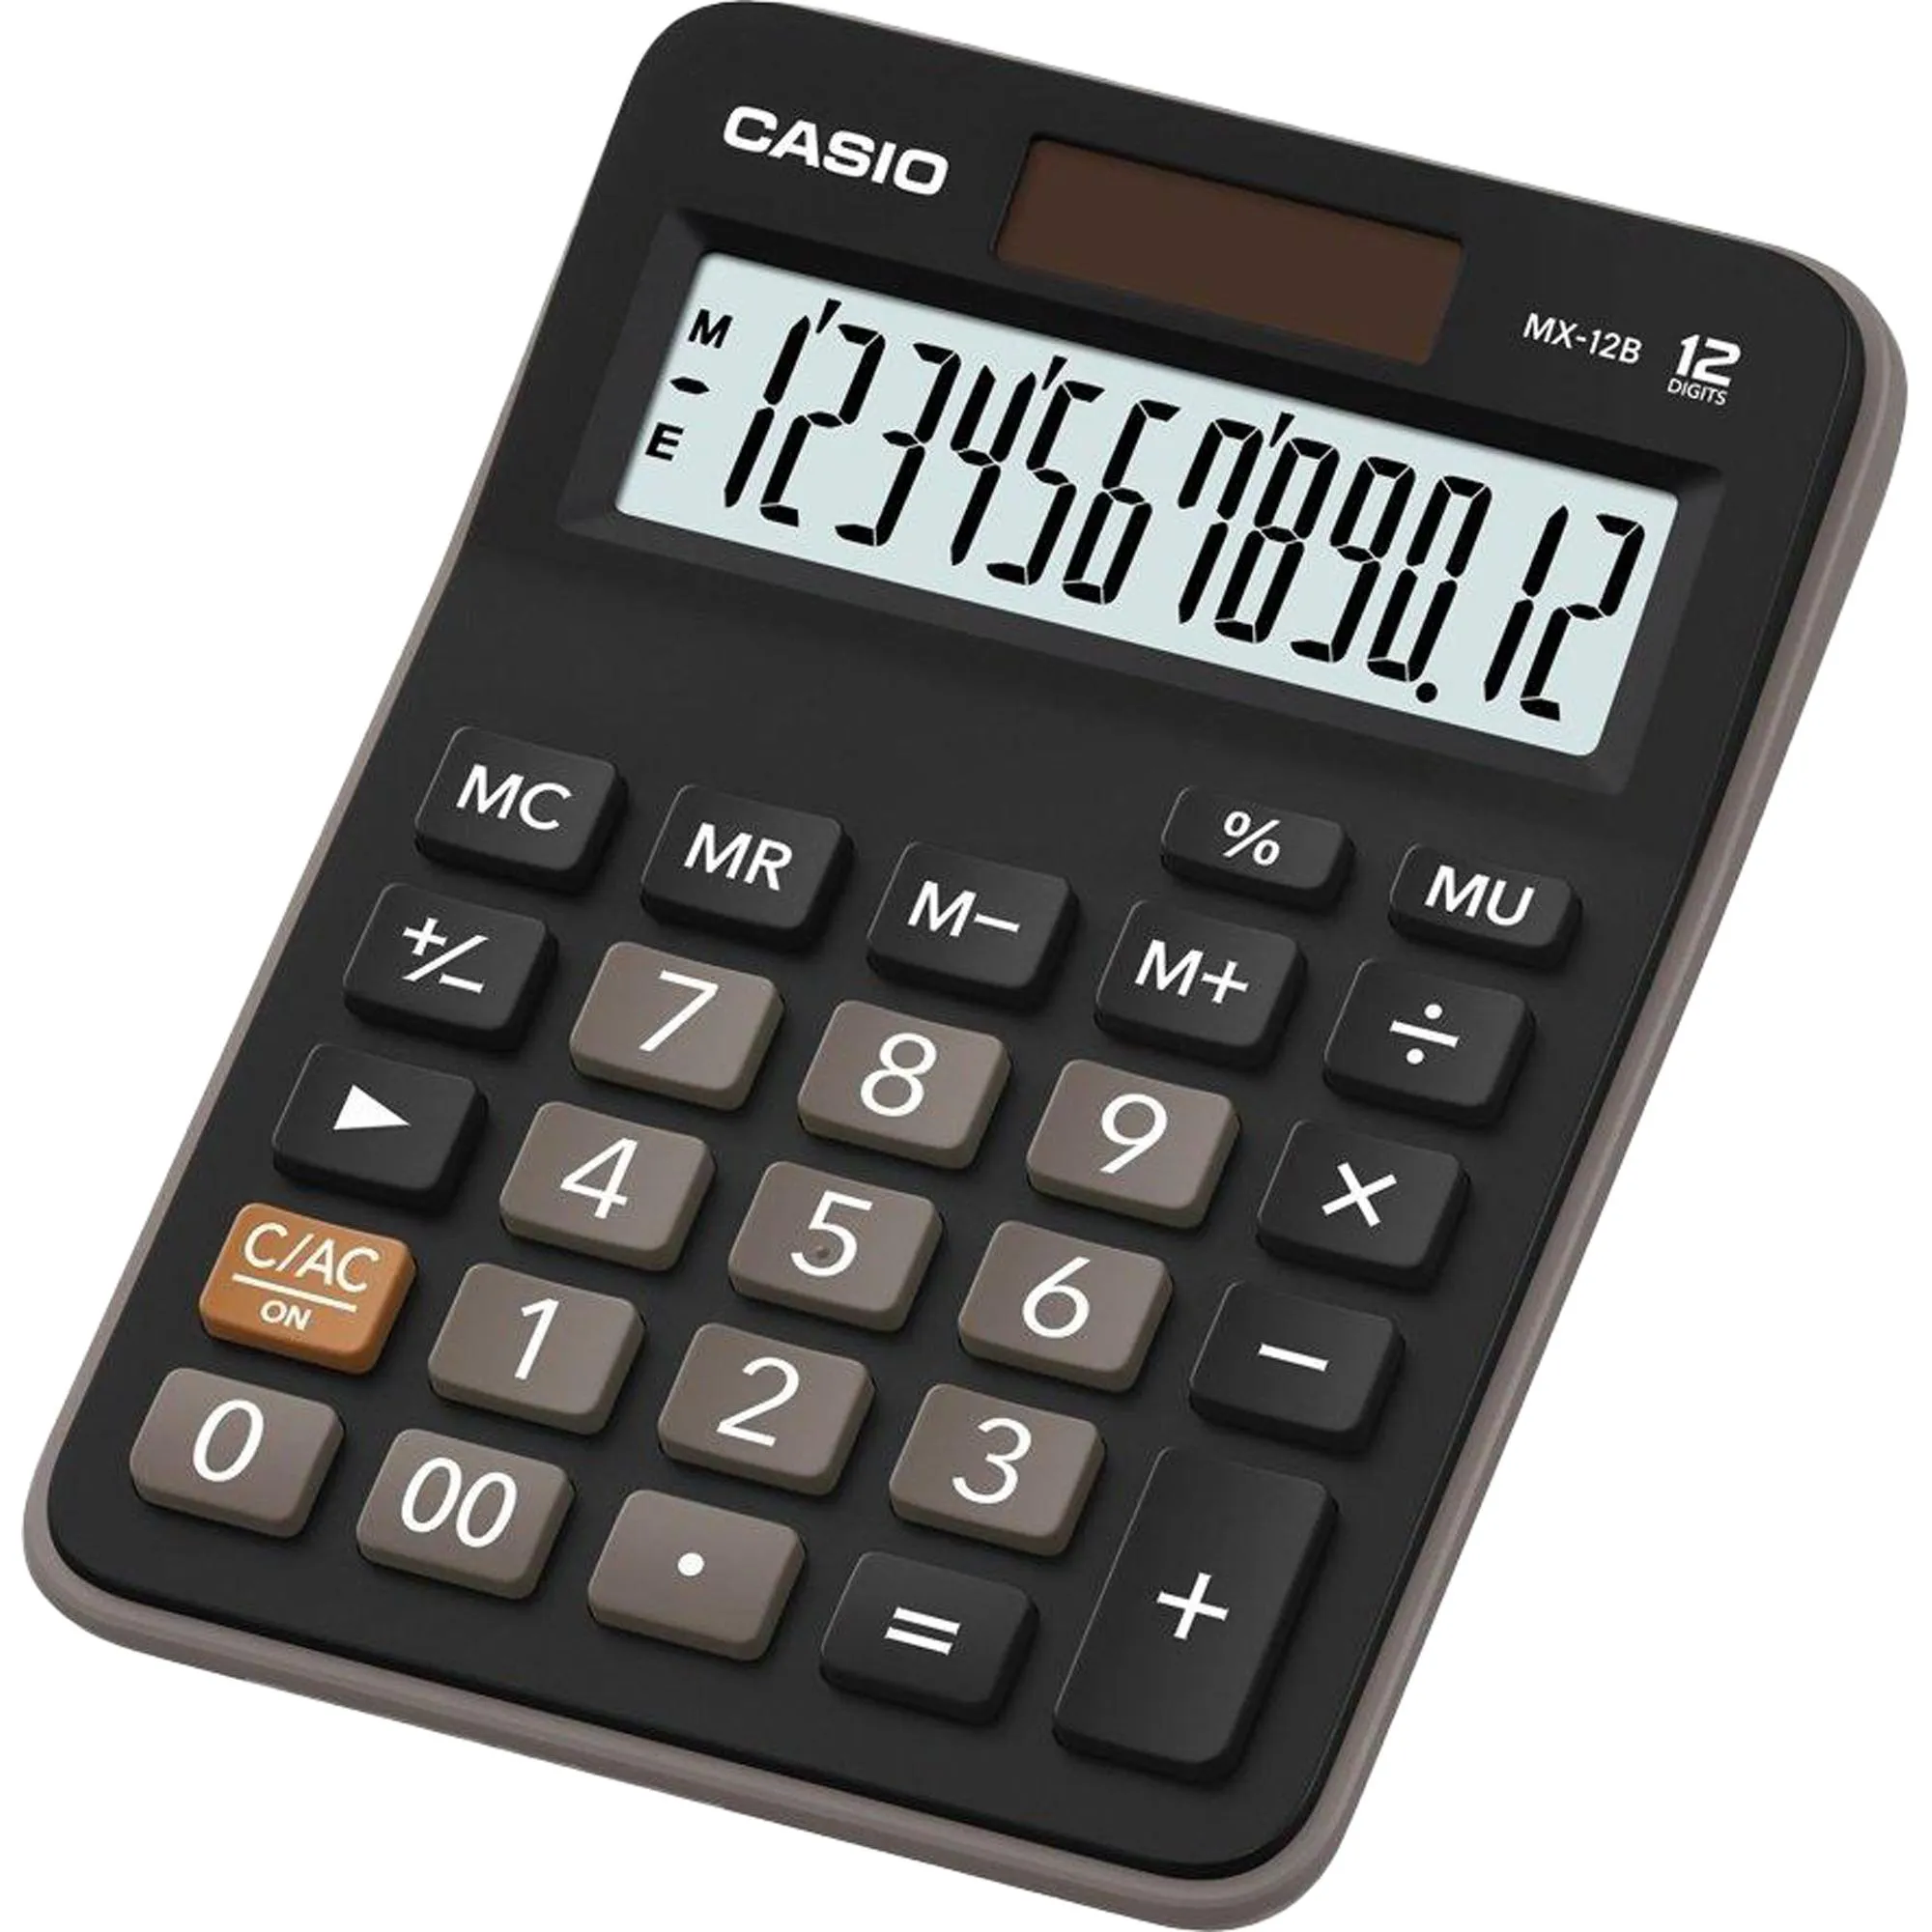 Calculadora de Mesa Casio MX-12B-W4-DC 12 Dígitos Preta por 39,99 à vista no boleto/pix ou parcele em até 1x sem juros. Compre na loja Mundomax!